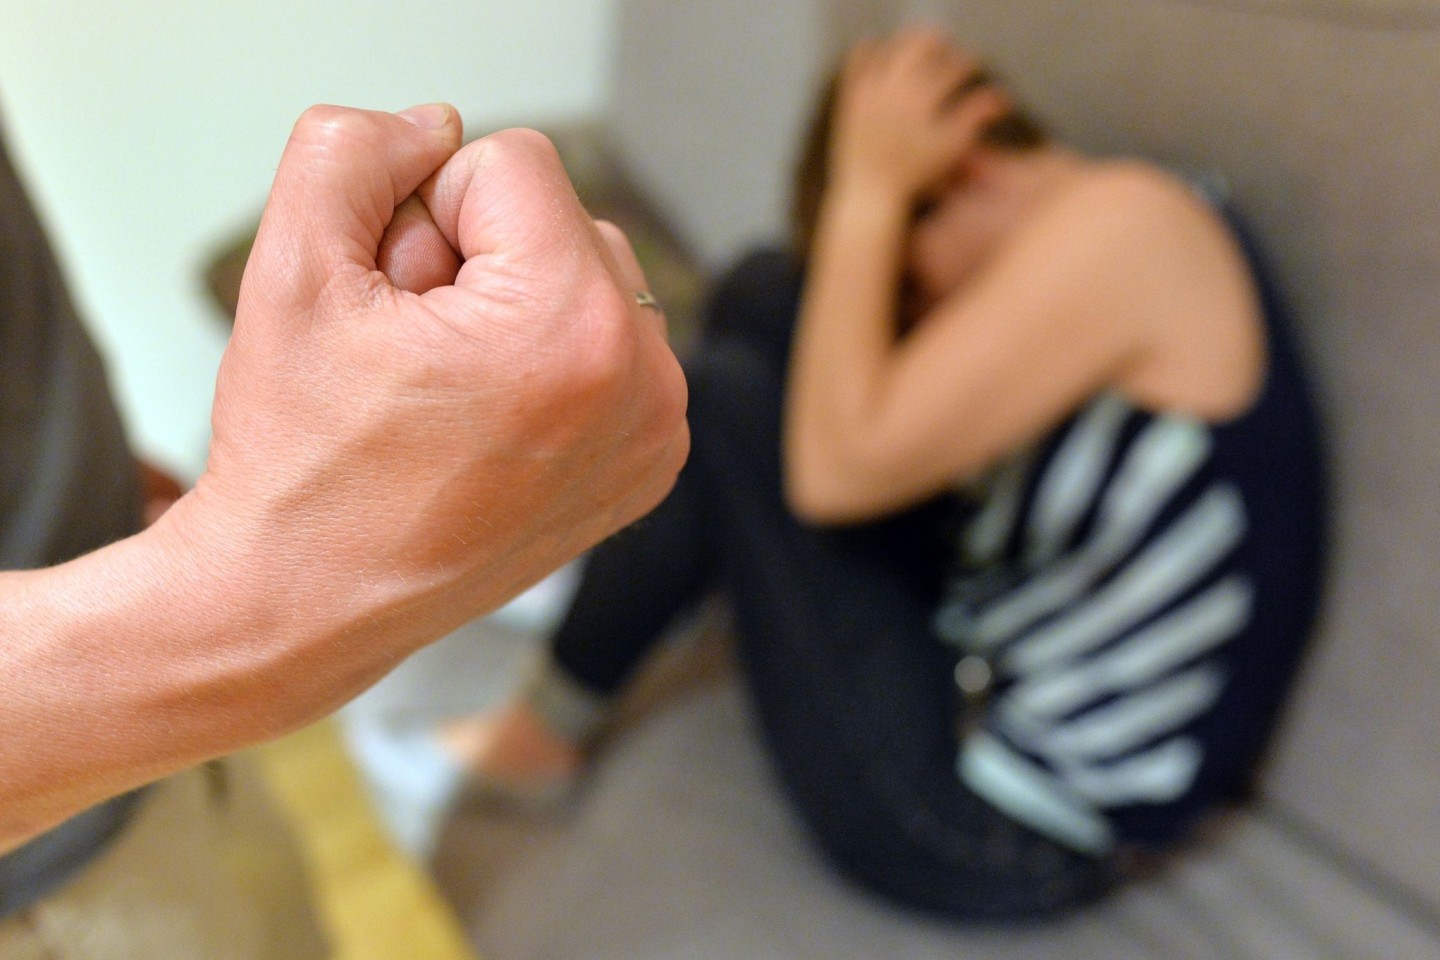 «Wir merken bei der telefonischen Beratung eine Zunahme von häuslicher Gewalt».